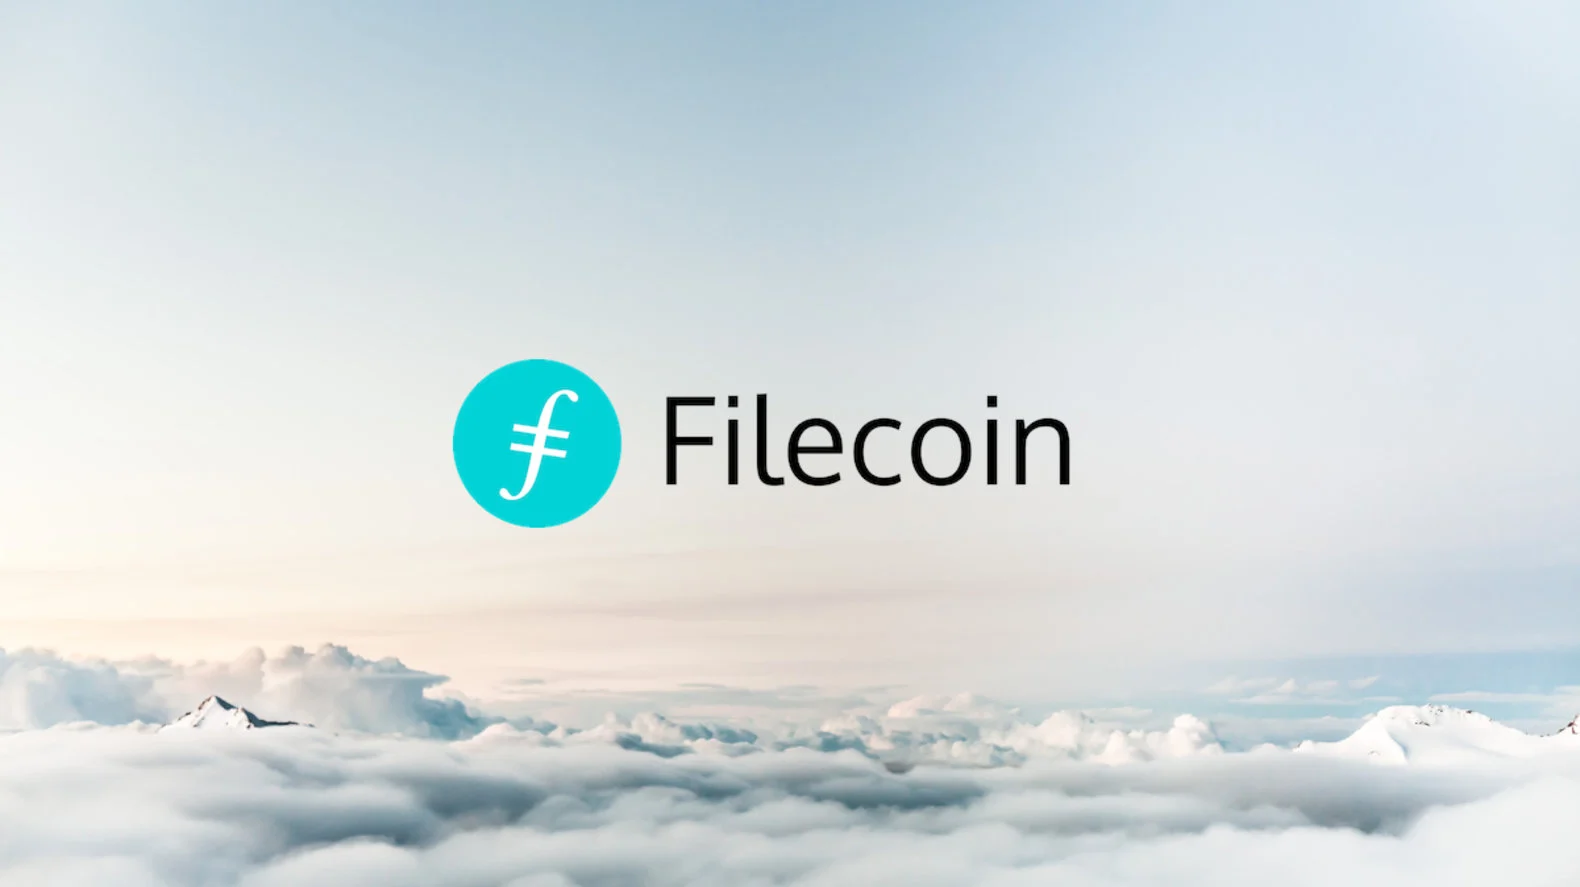 如何测试与评估 Filecoin 挖矿硬件？